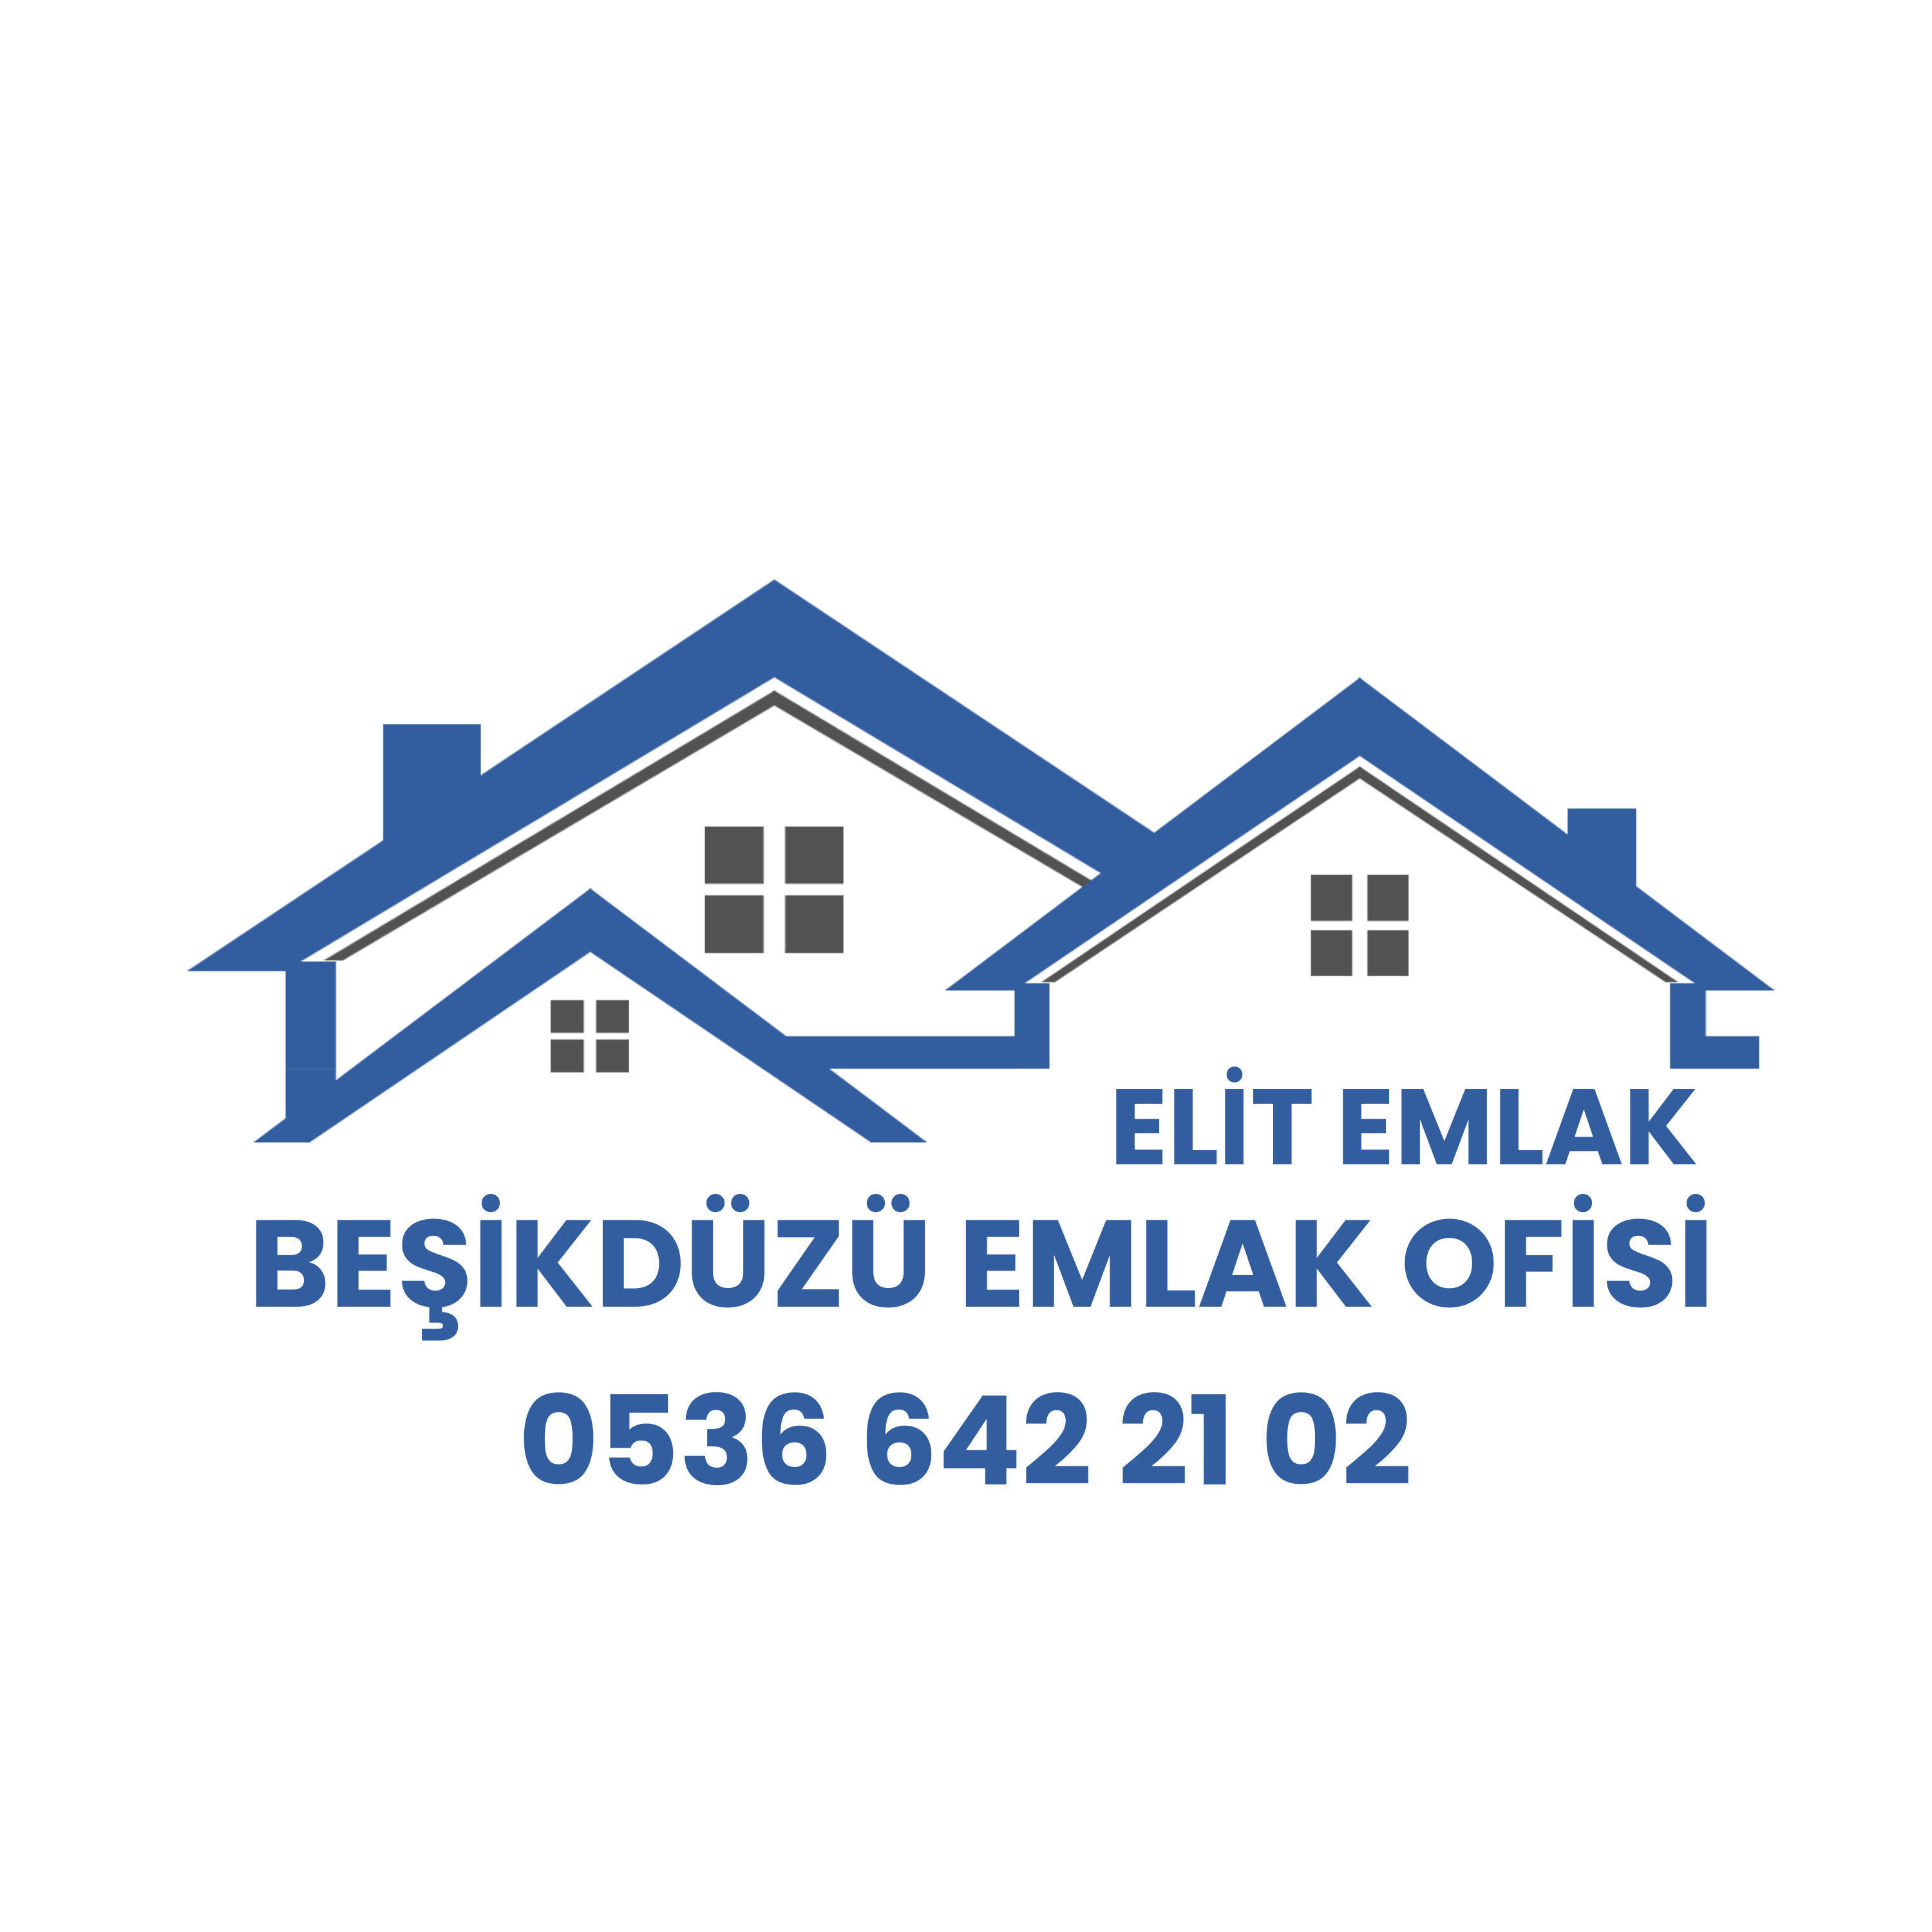 BEŞİKDÜZÜ EMLAK OFİSİ logo